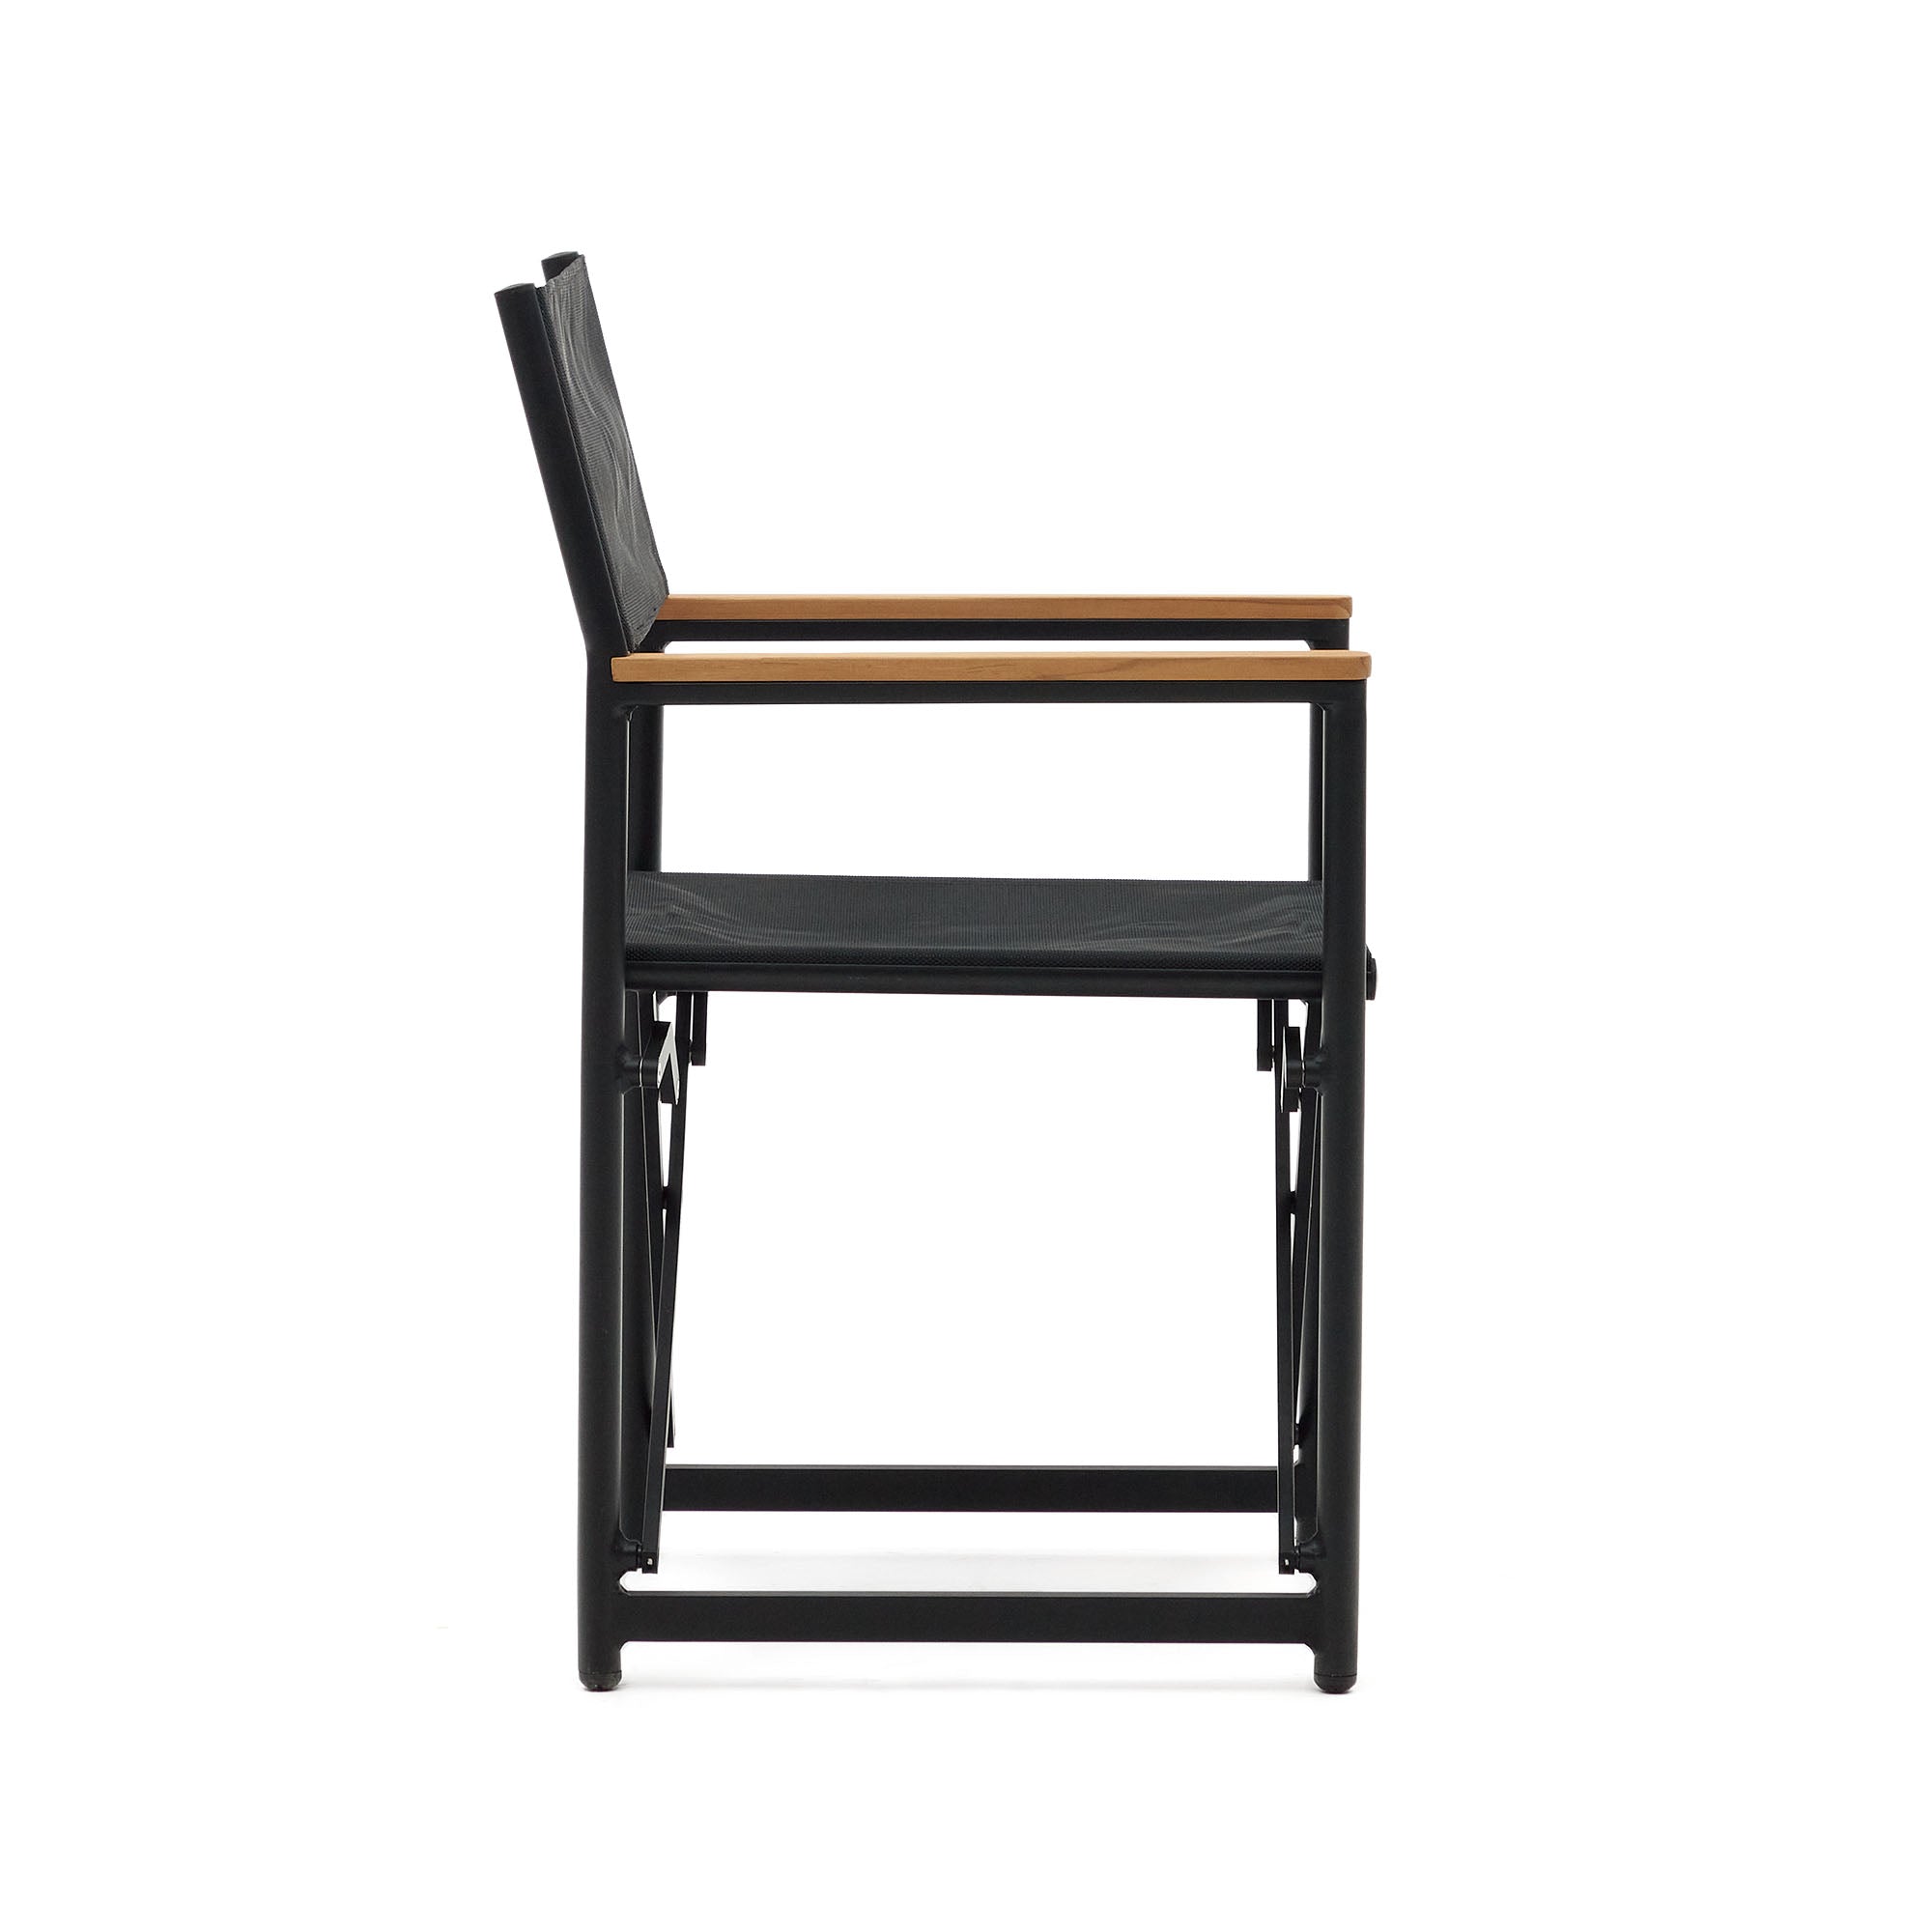 Llado fekete alumínium összecsukható szék tömör teakfa karfával 100% kültéri használatra alkalmas